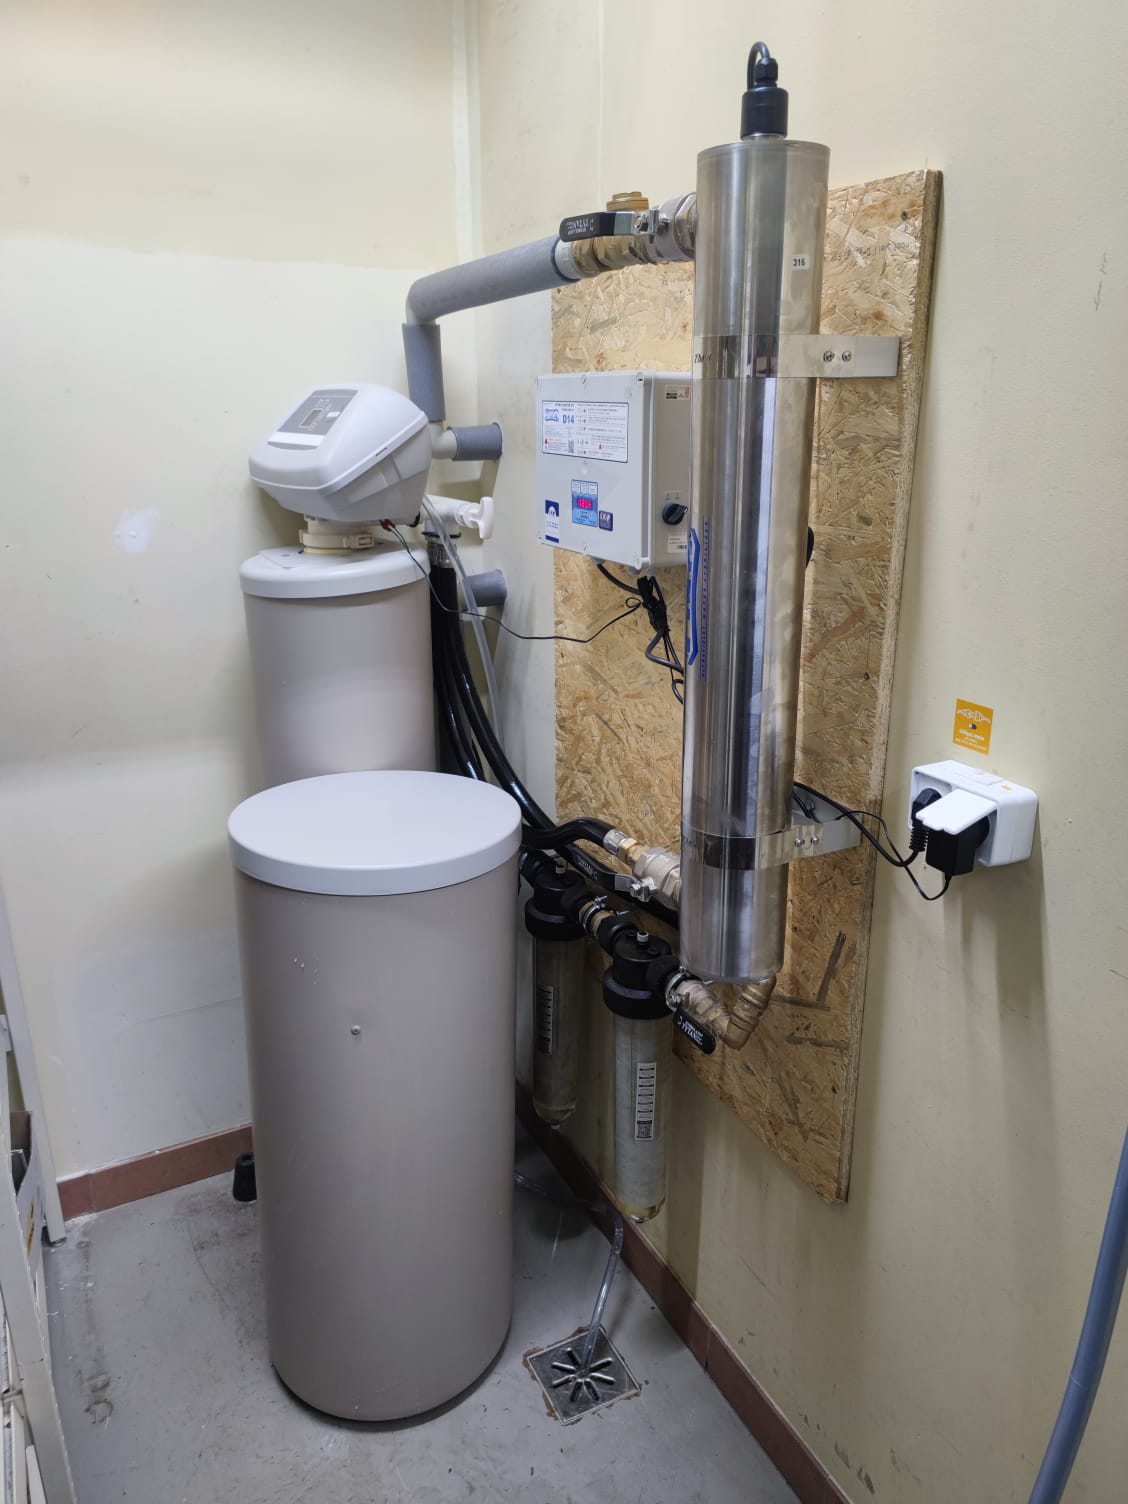 Zmiękczacz wody ECOWATER 4512 oraz lampa bakteriobójcza TMA D14 montaż w Podlasiu dla stacji benzynowej i restauracji